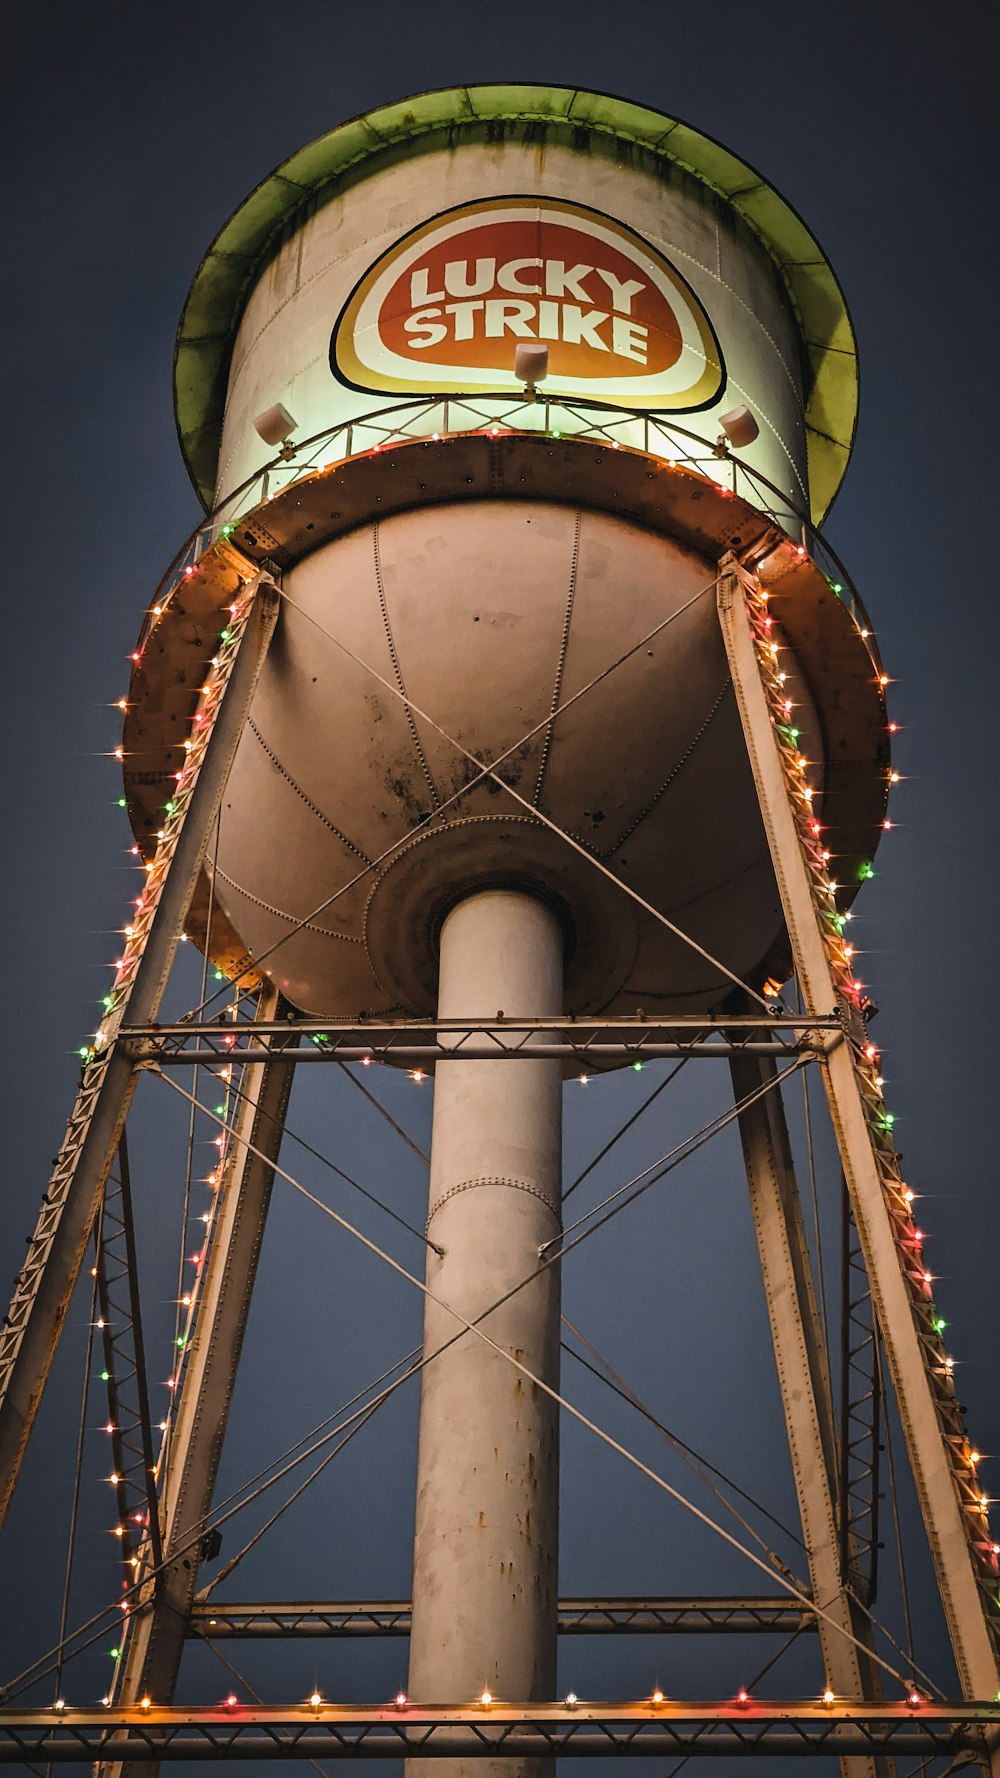 ラッキーストライク給水塔はクリスマスイルミネーションで飾られています